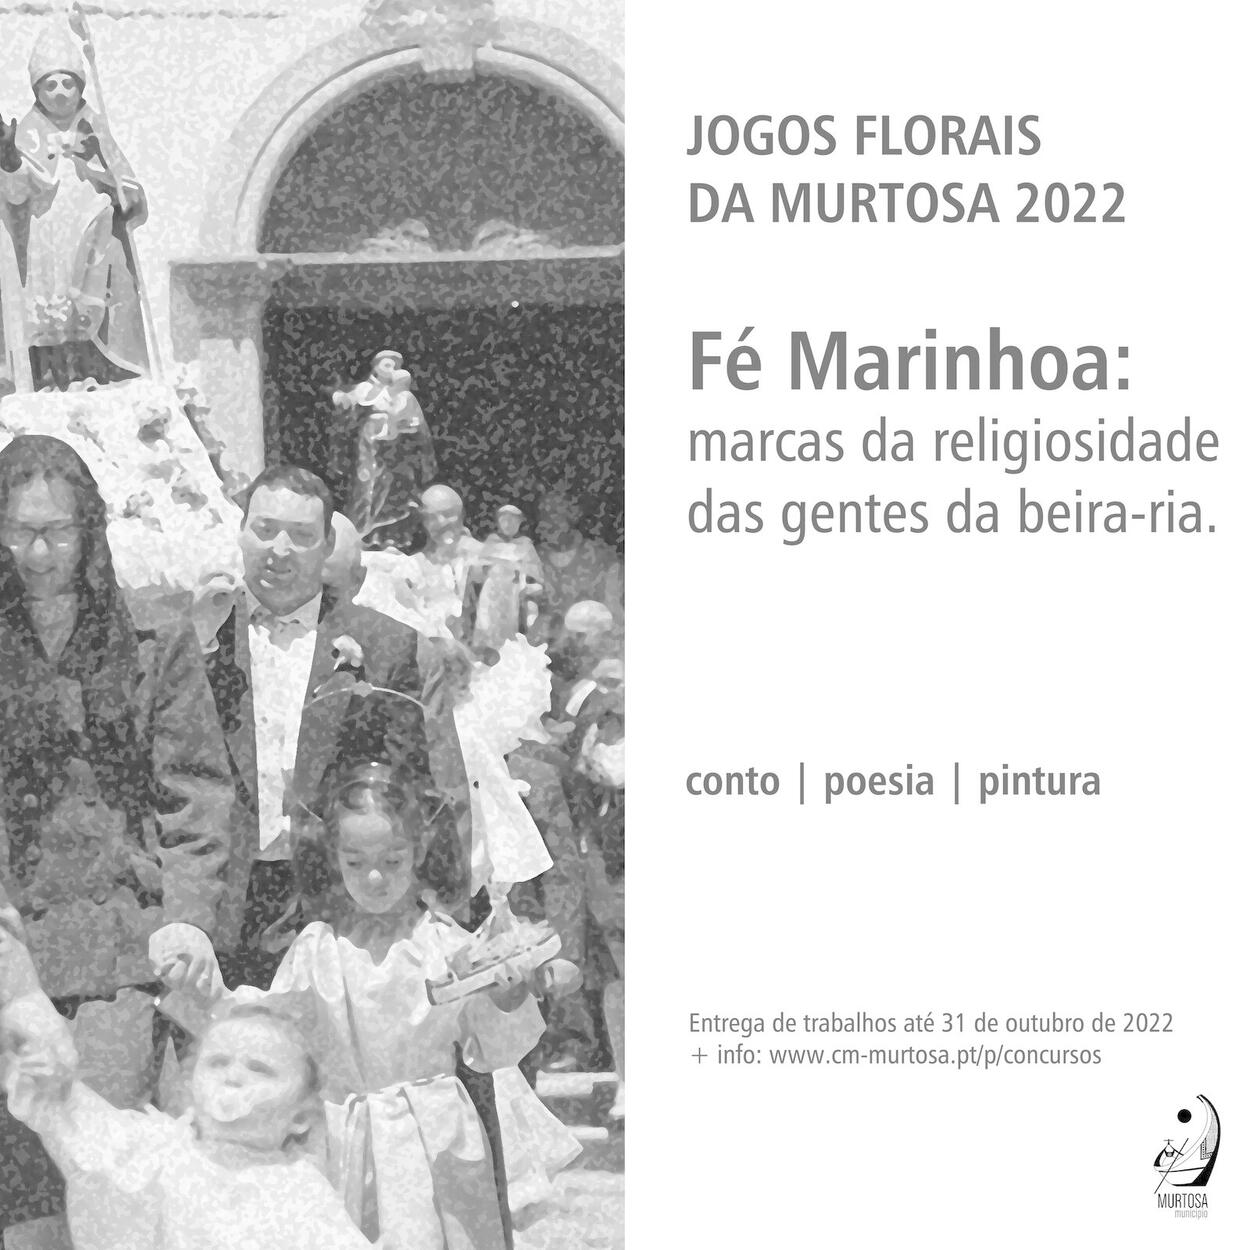  LANÇAMENTO DO CONCURSO DE JOGOS FLORAIS DA MURTOSA 2022